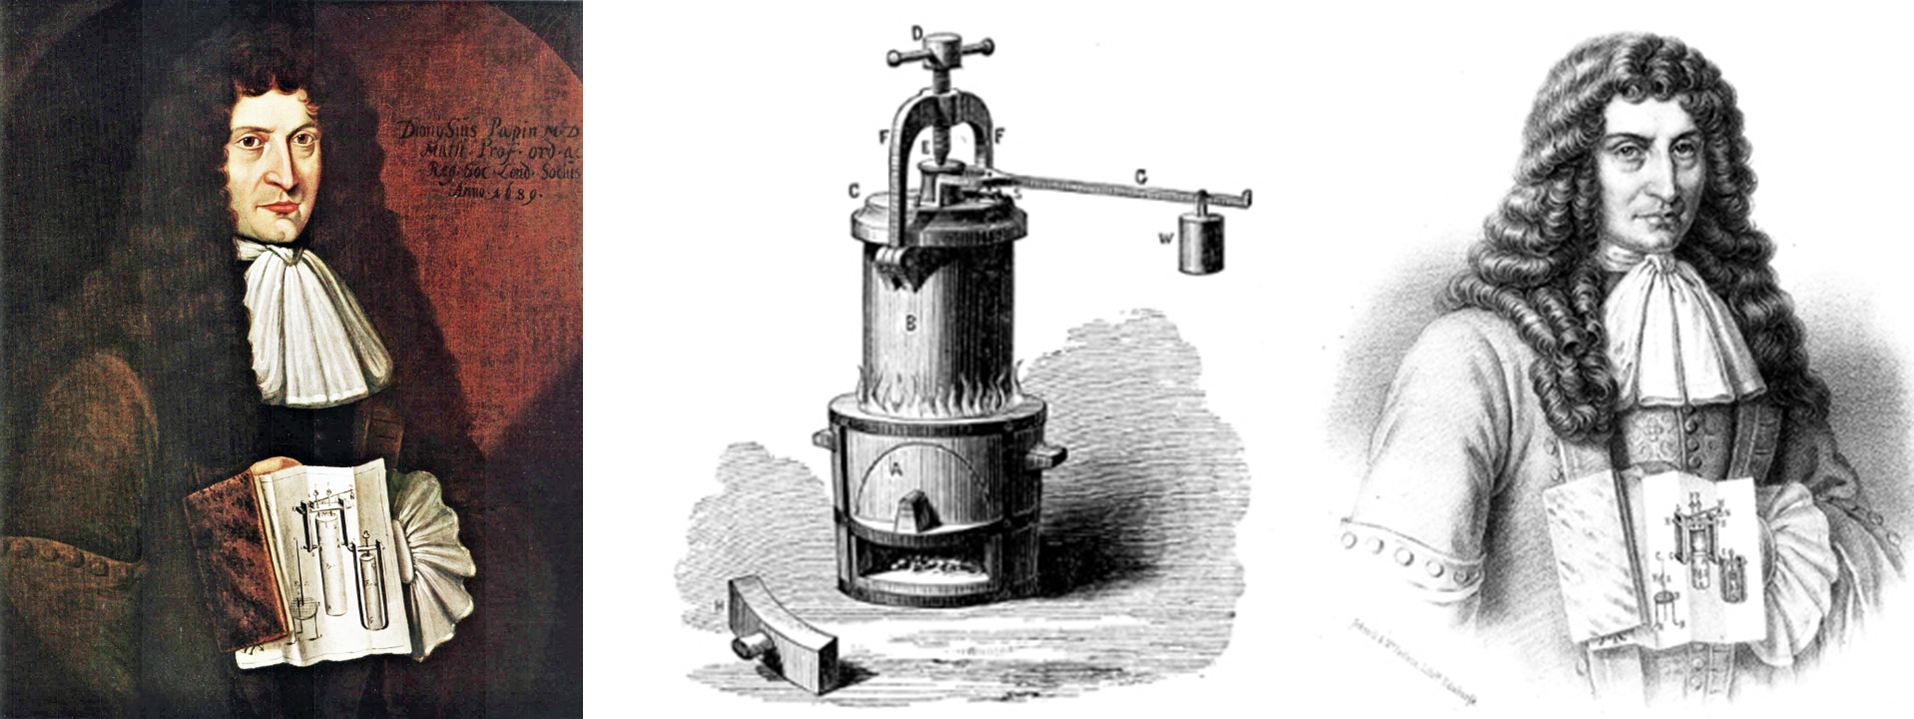 Denis Papin amb el disseny del seu _digestor a vapor_ (esquerra), i un gravat després d'haver-lo inventat. Per la merda de menjar que va fer-hi per la Royal Society n'hauria d'haver dit _indigestor_.